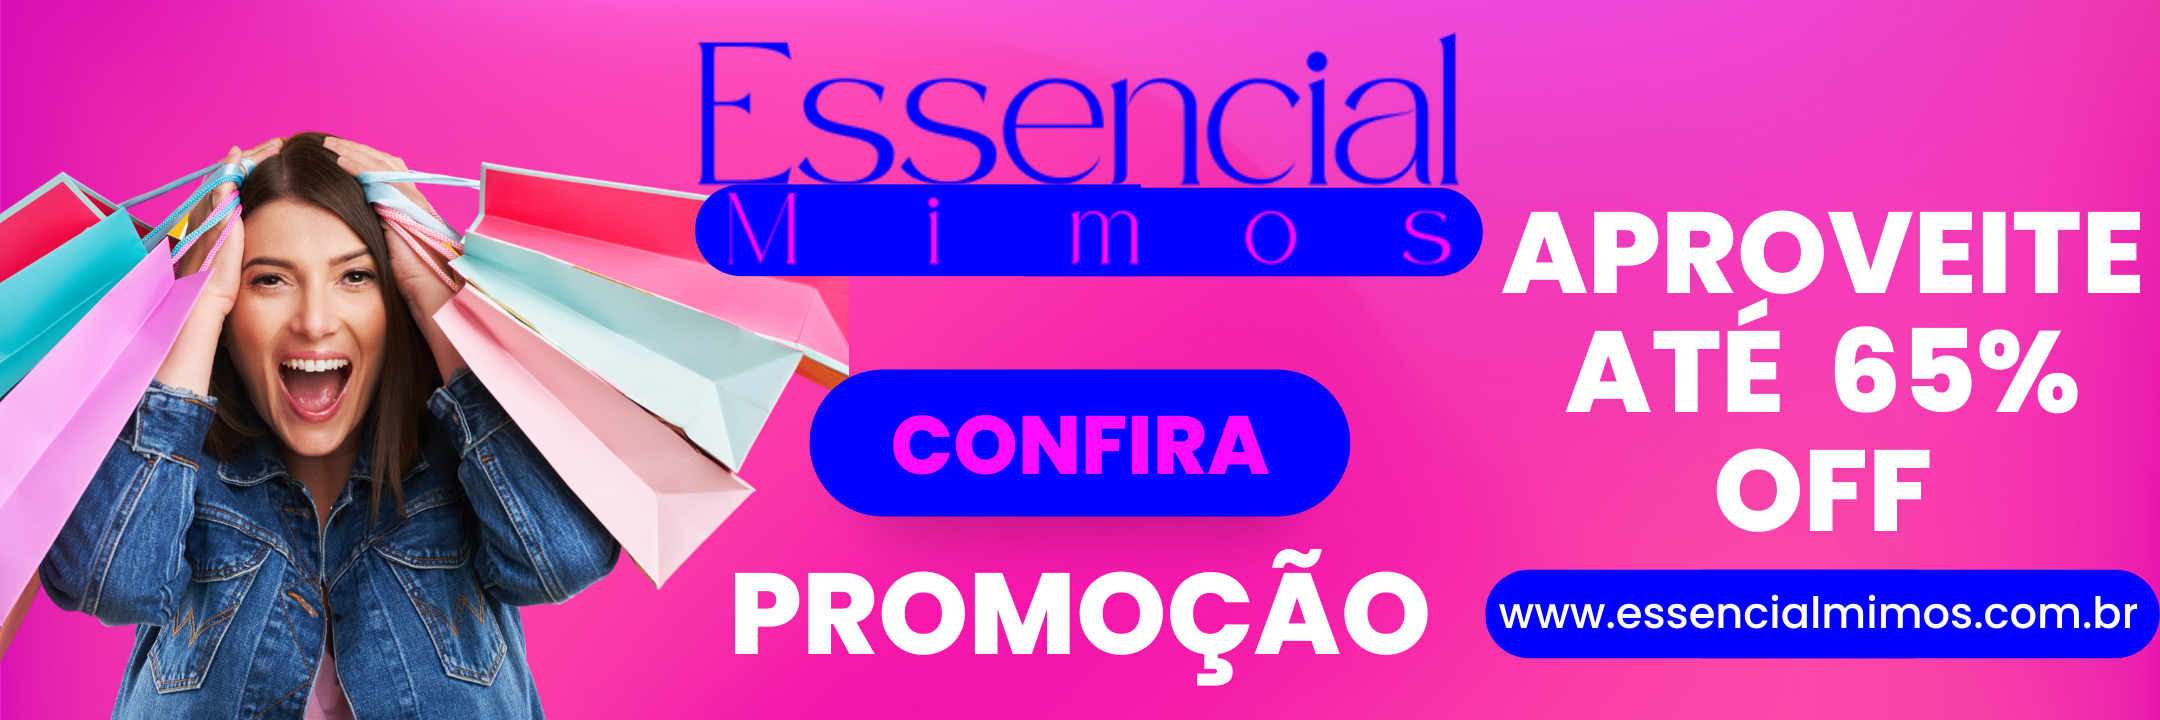 essencialmimos.com.br